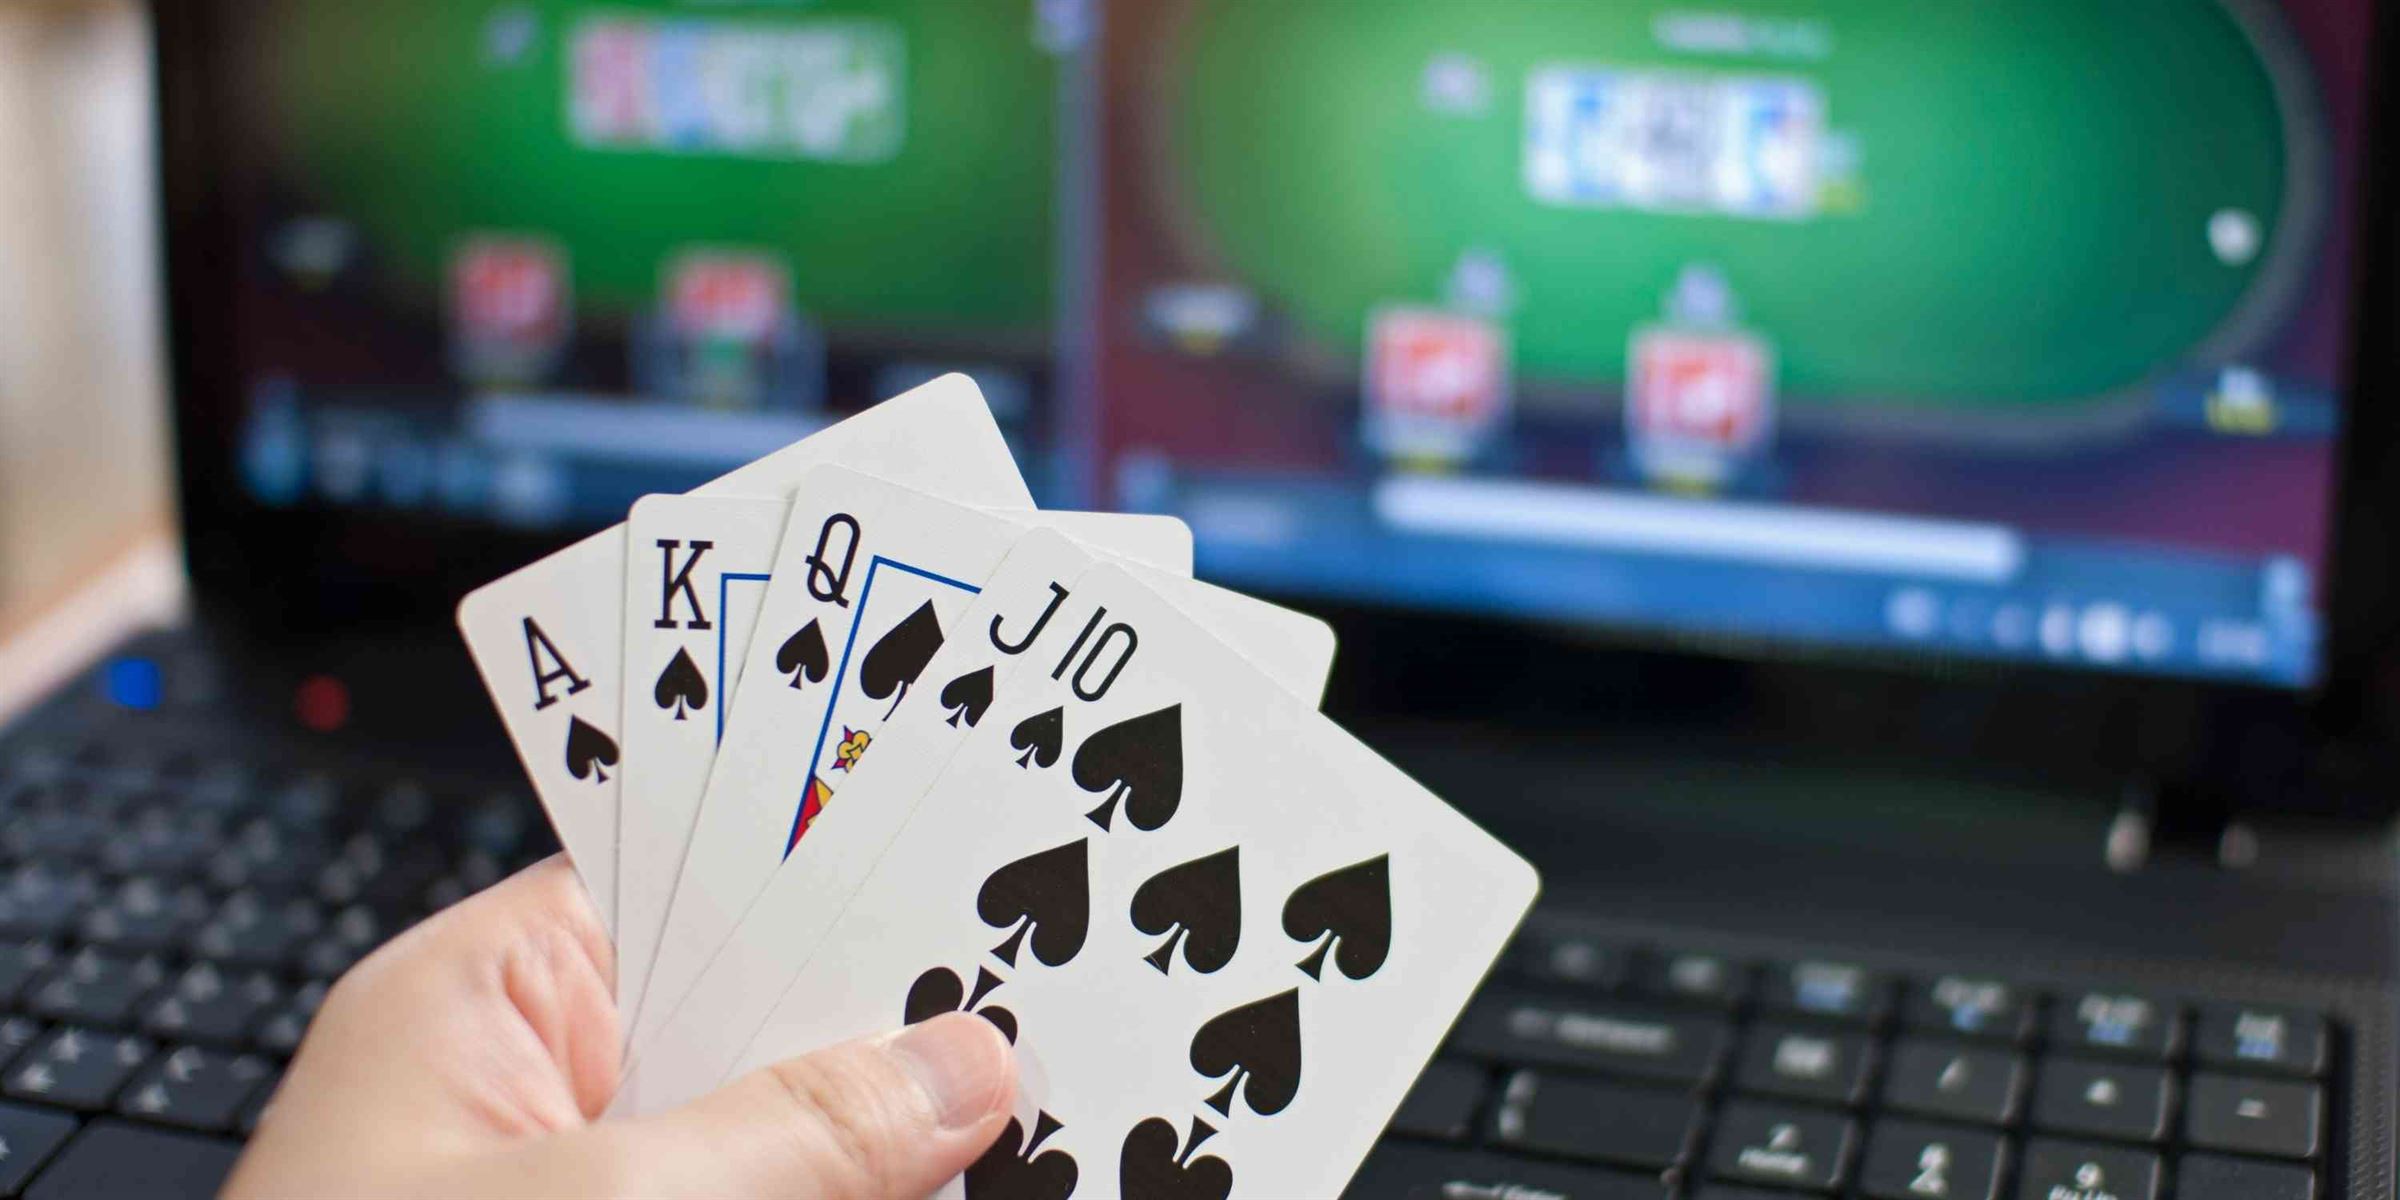 Spela Hemma: Organisera Spännande Hemmamatcher i Poker